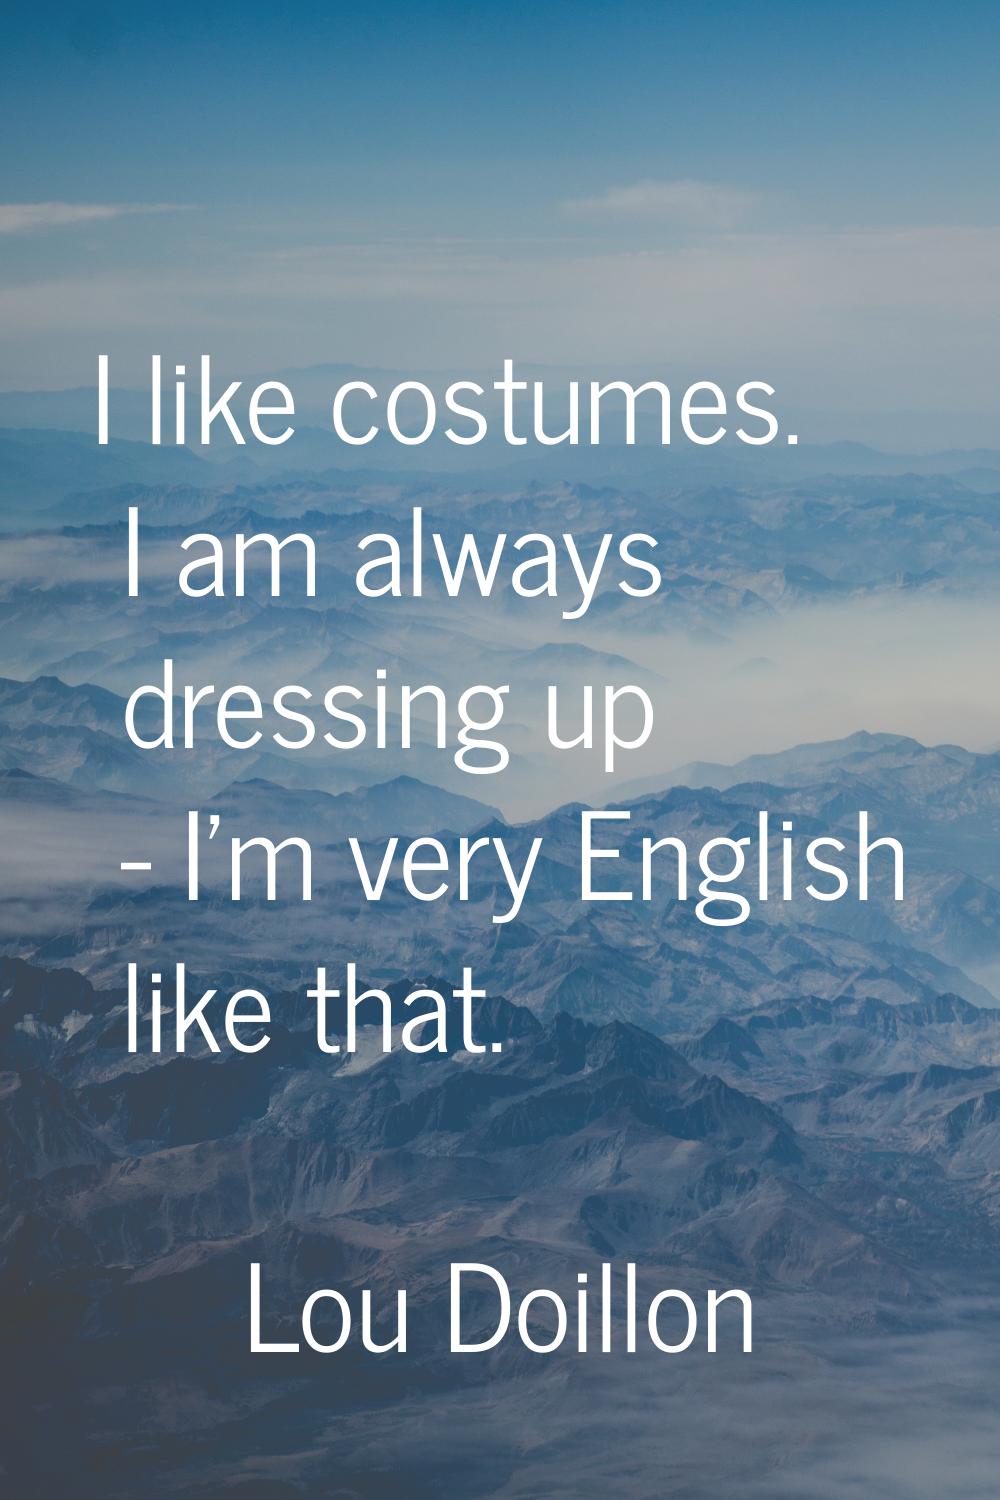 I like costumes. I am always dressing up - I'm very English like that.